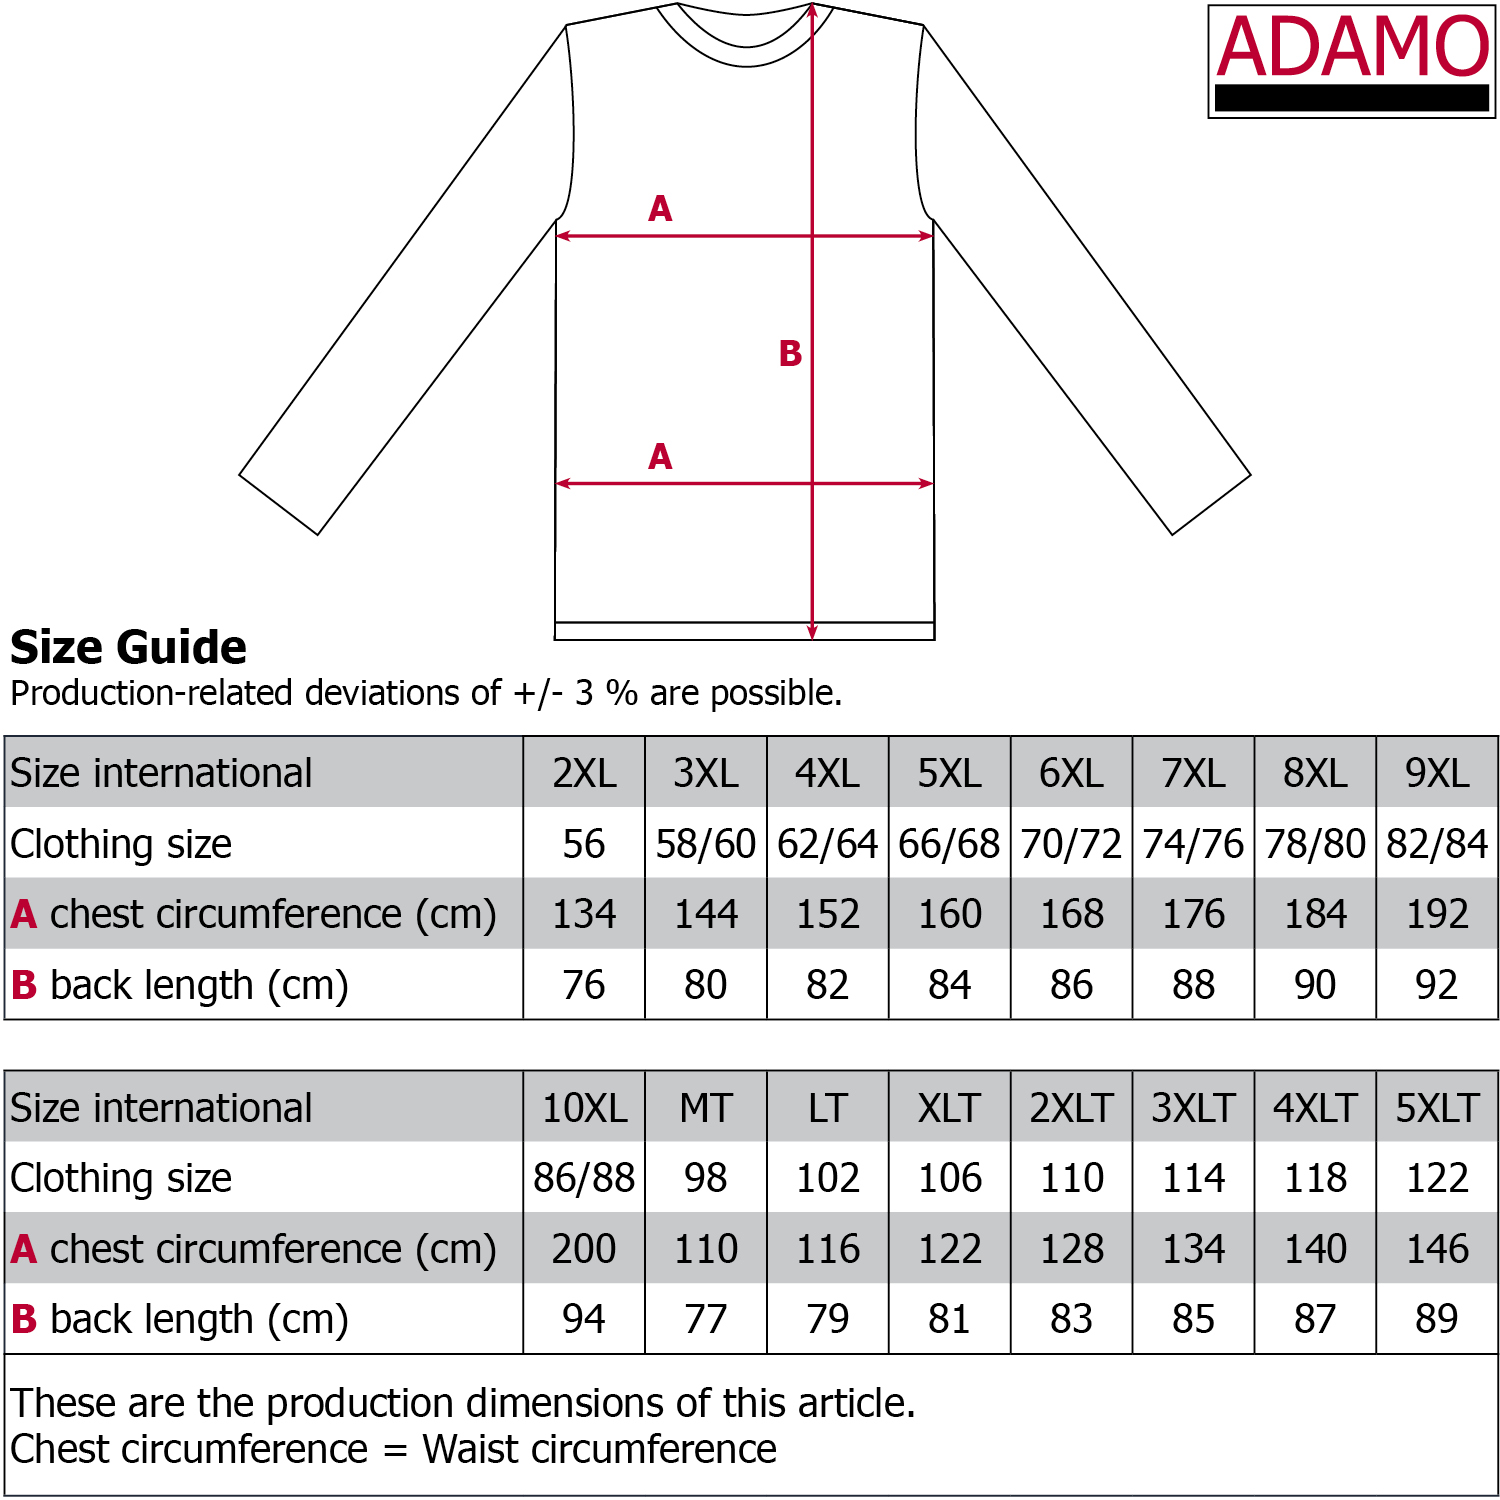 Langer Herren Schlafanzug von Adamo in Übergrößen bis 10XL und in Langgrößen bis 122